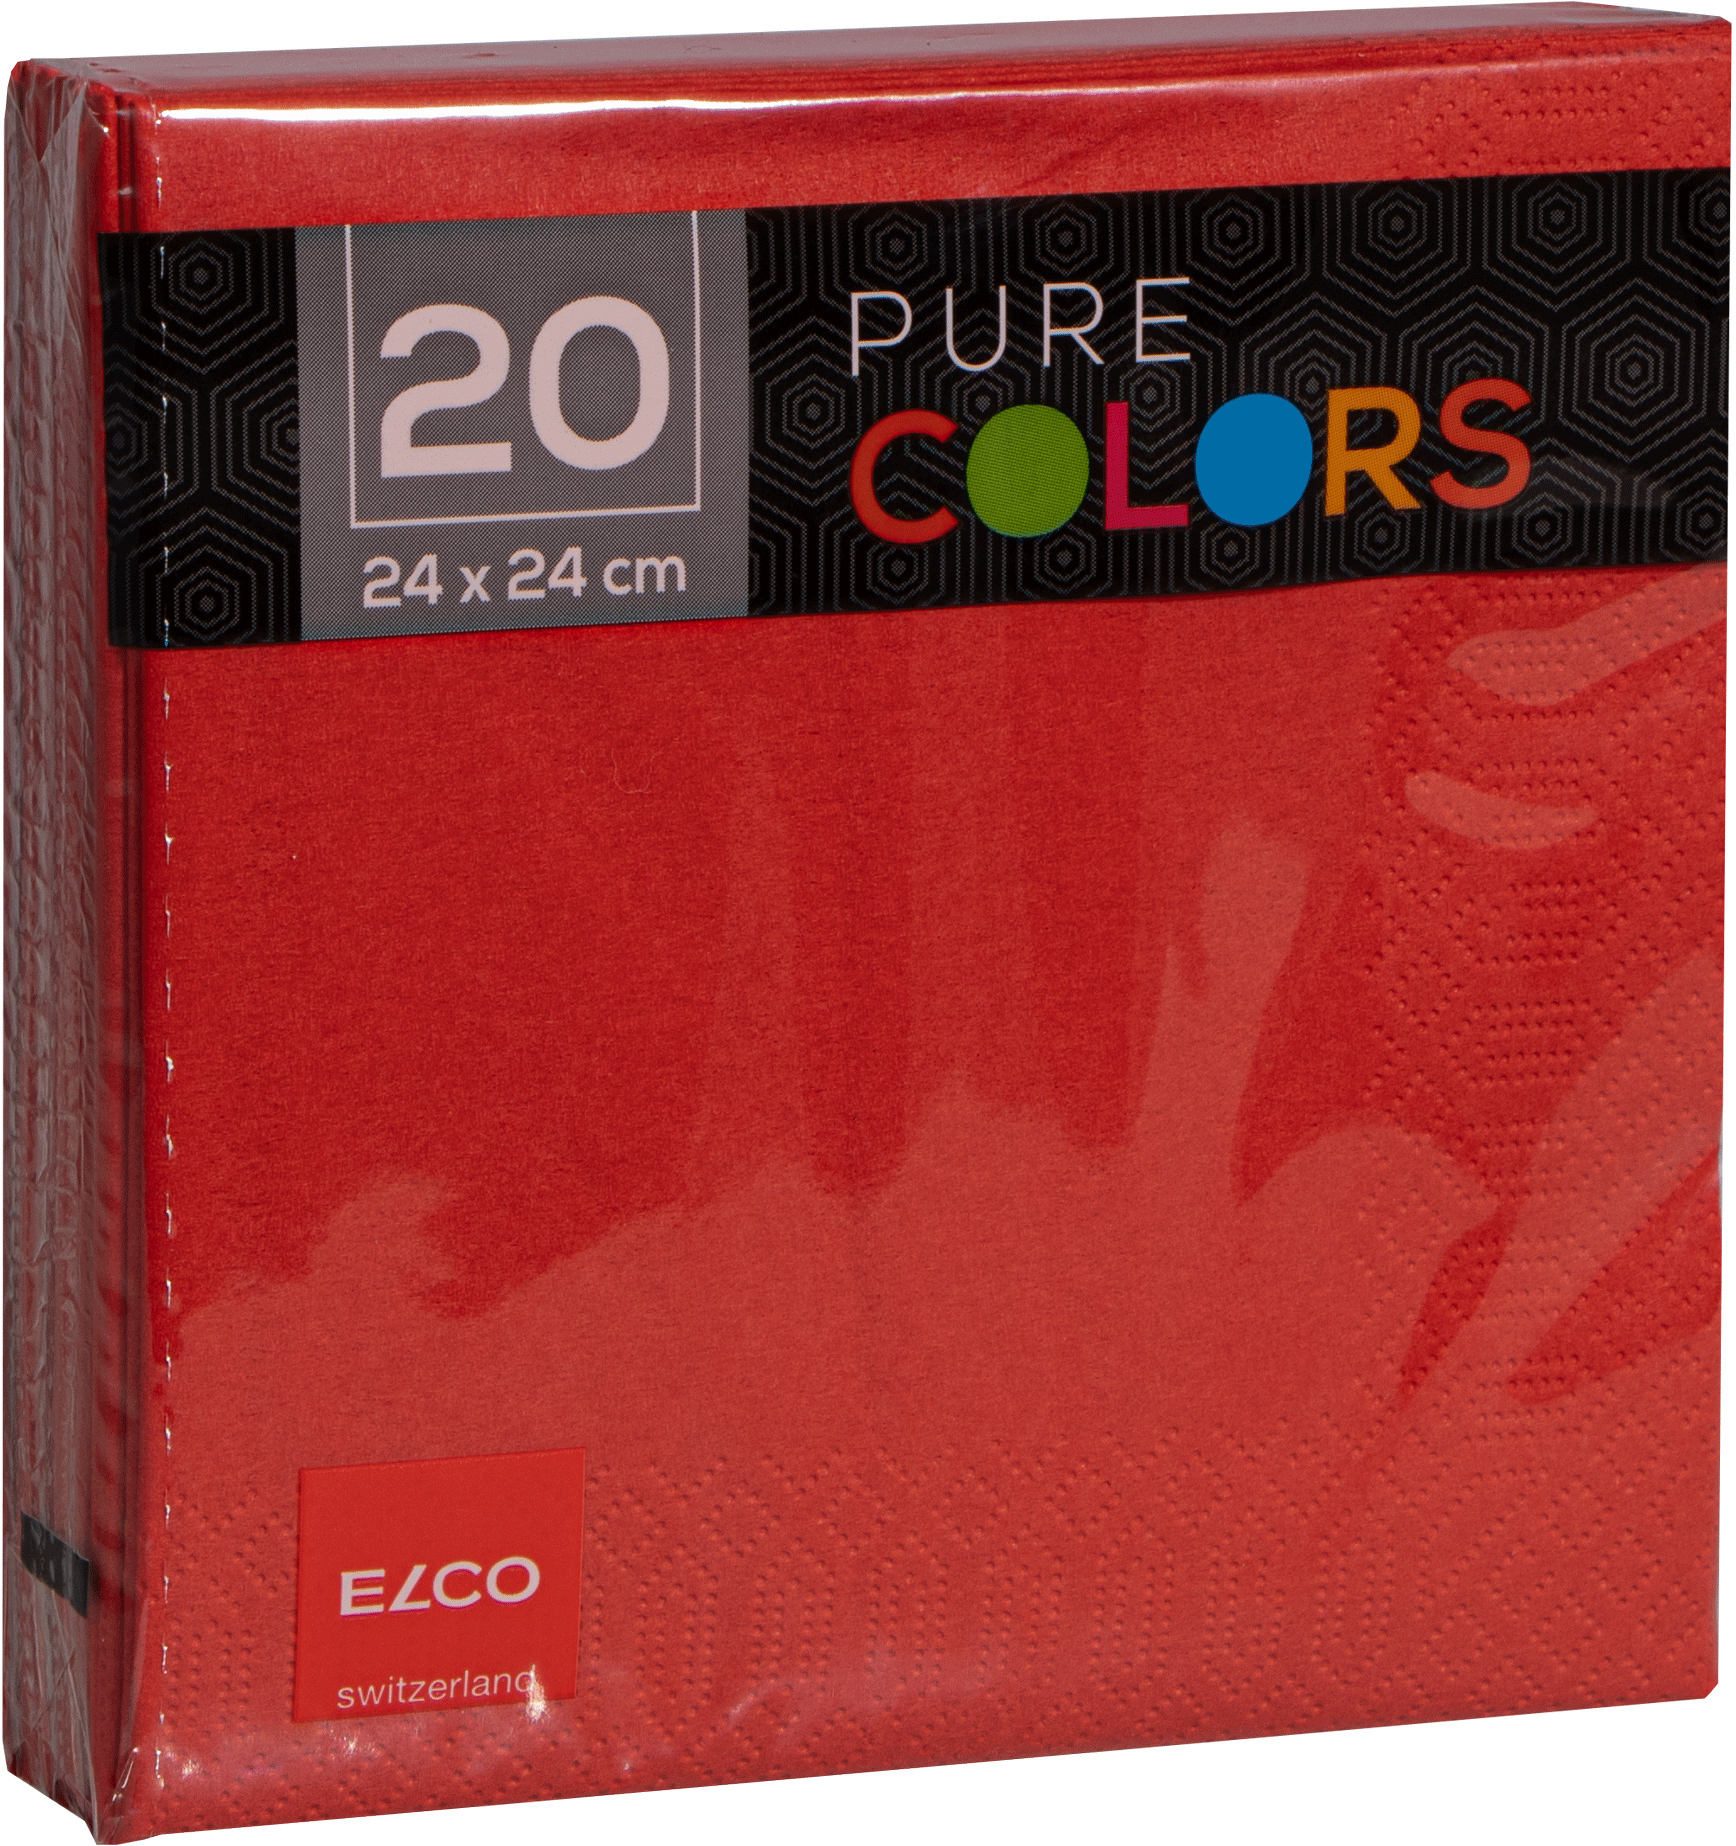 ELCO Serviettes tissue 24x24cm PC234020-020 3 plis, rouge 20pcs.